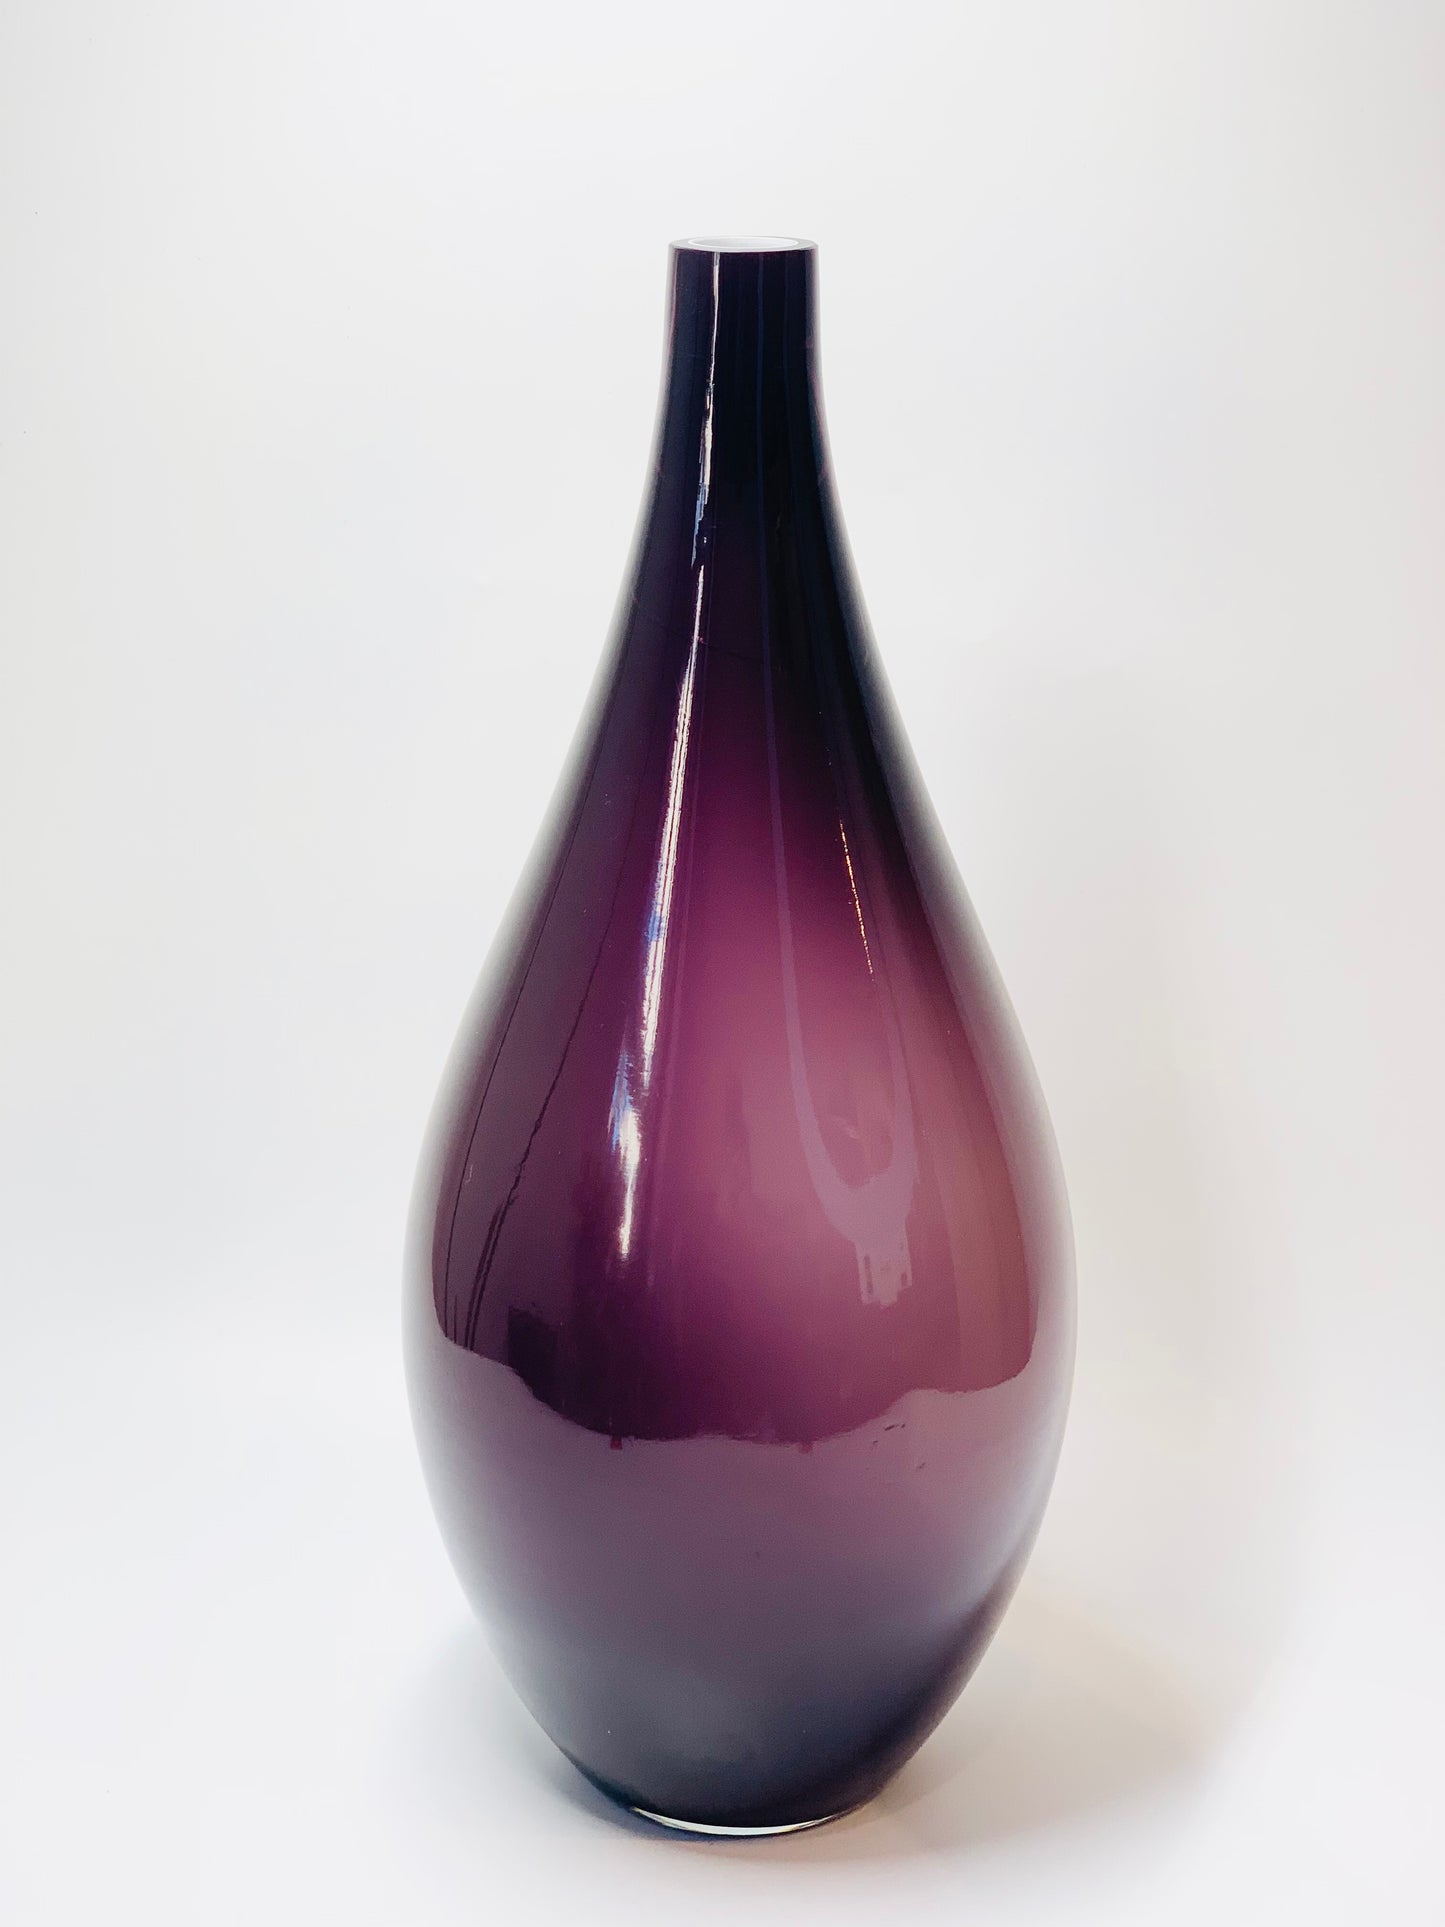 Tall Midcentury purple cased glass vase